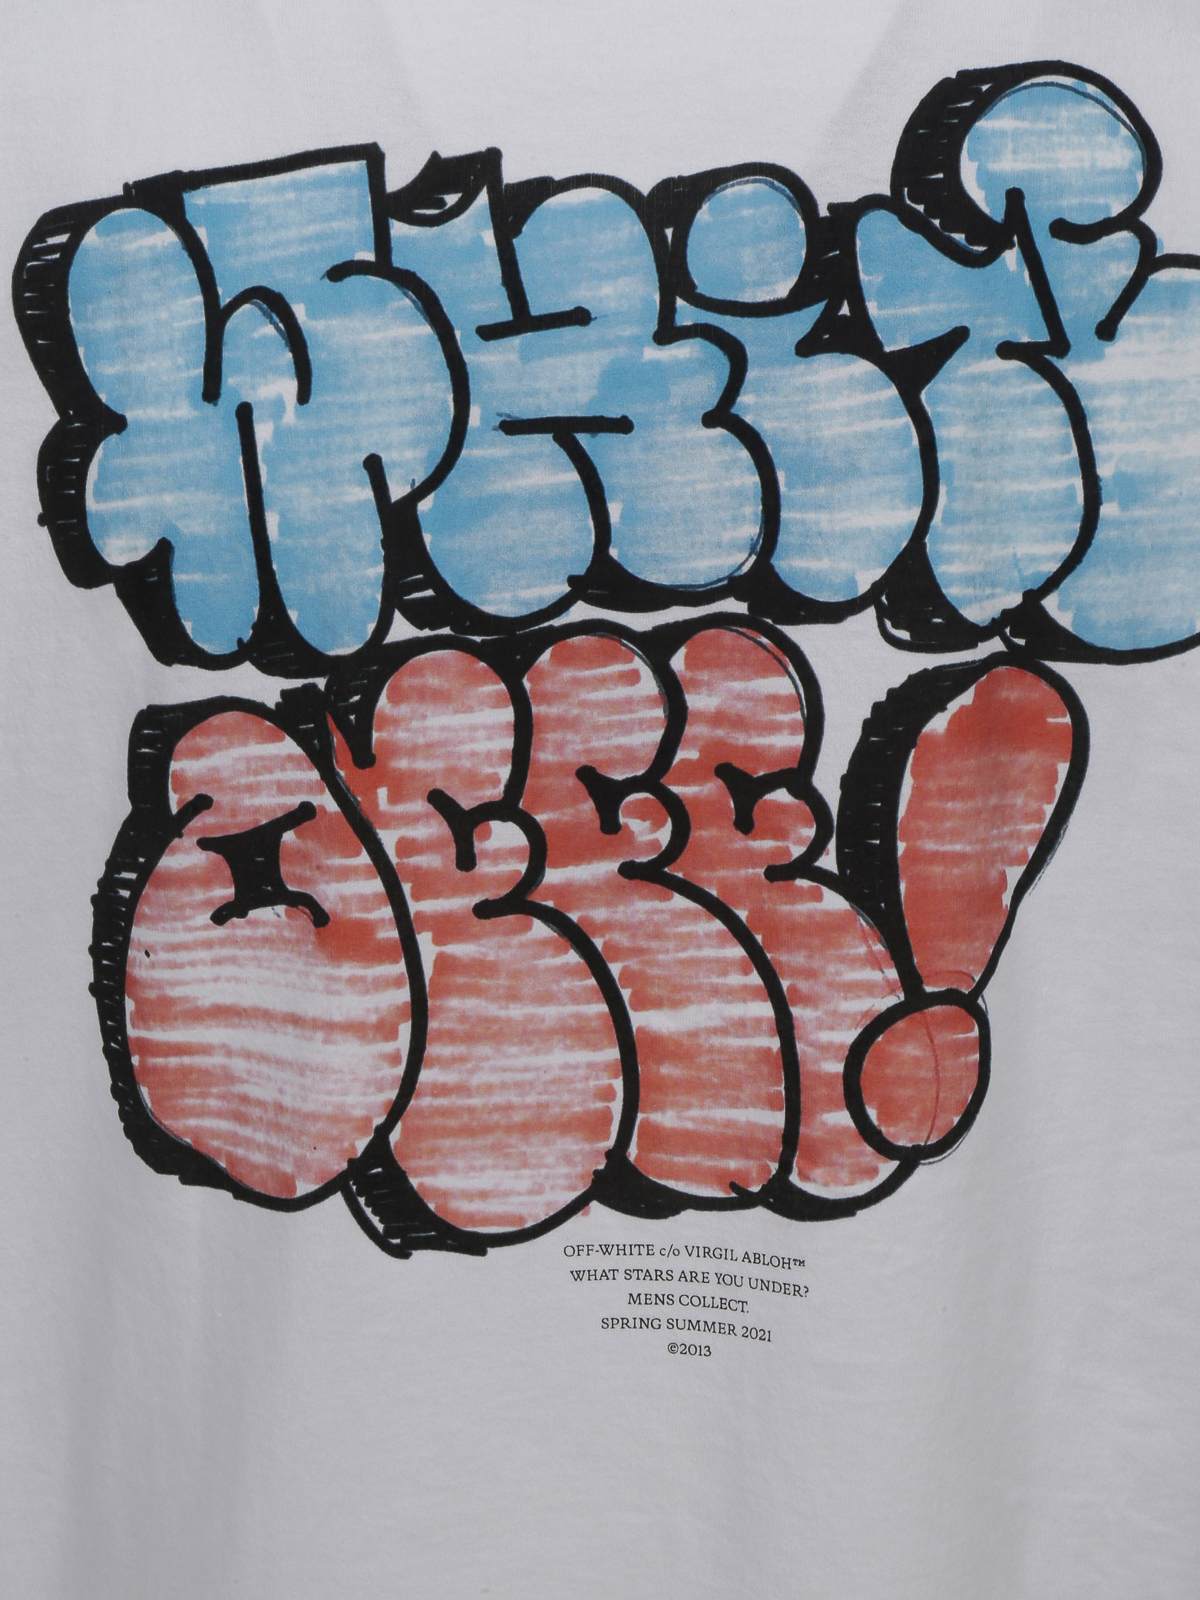 Graffiti T-shirt